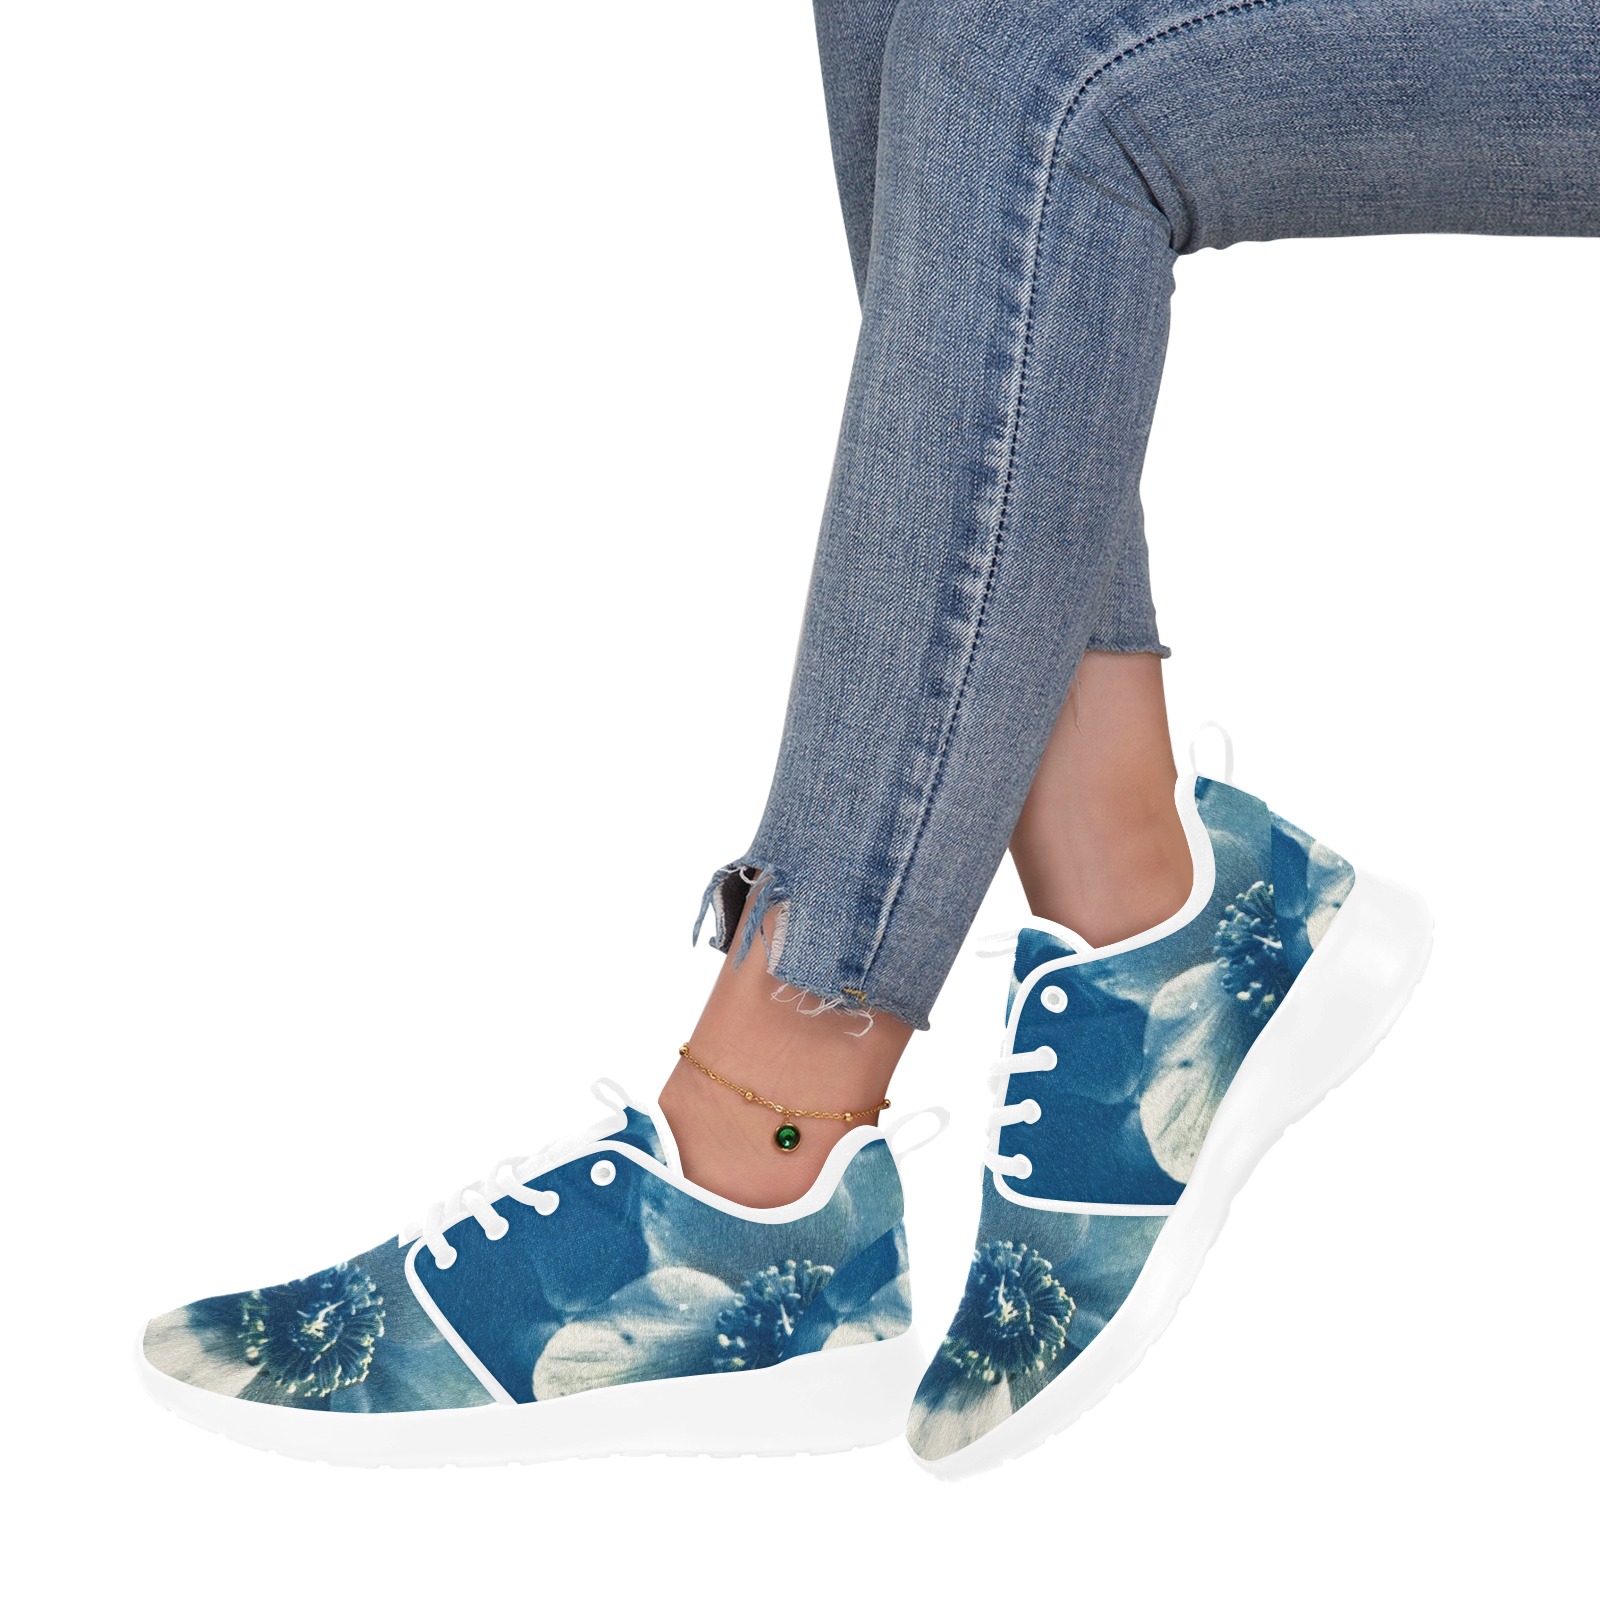 Helleboro white women sneakers Women's Pull Loop Sneakers (Model 02001)